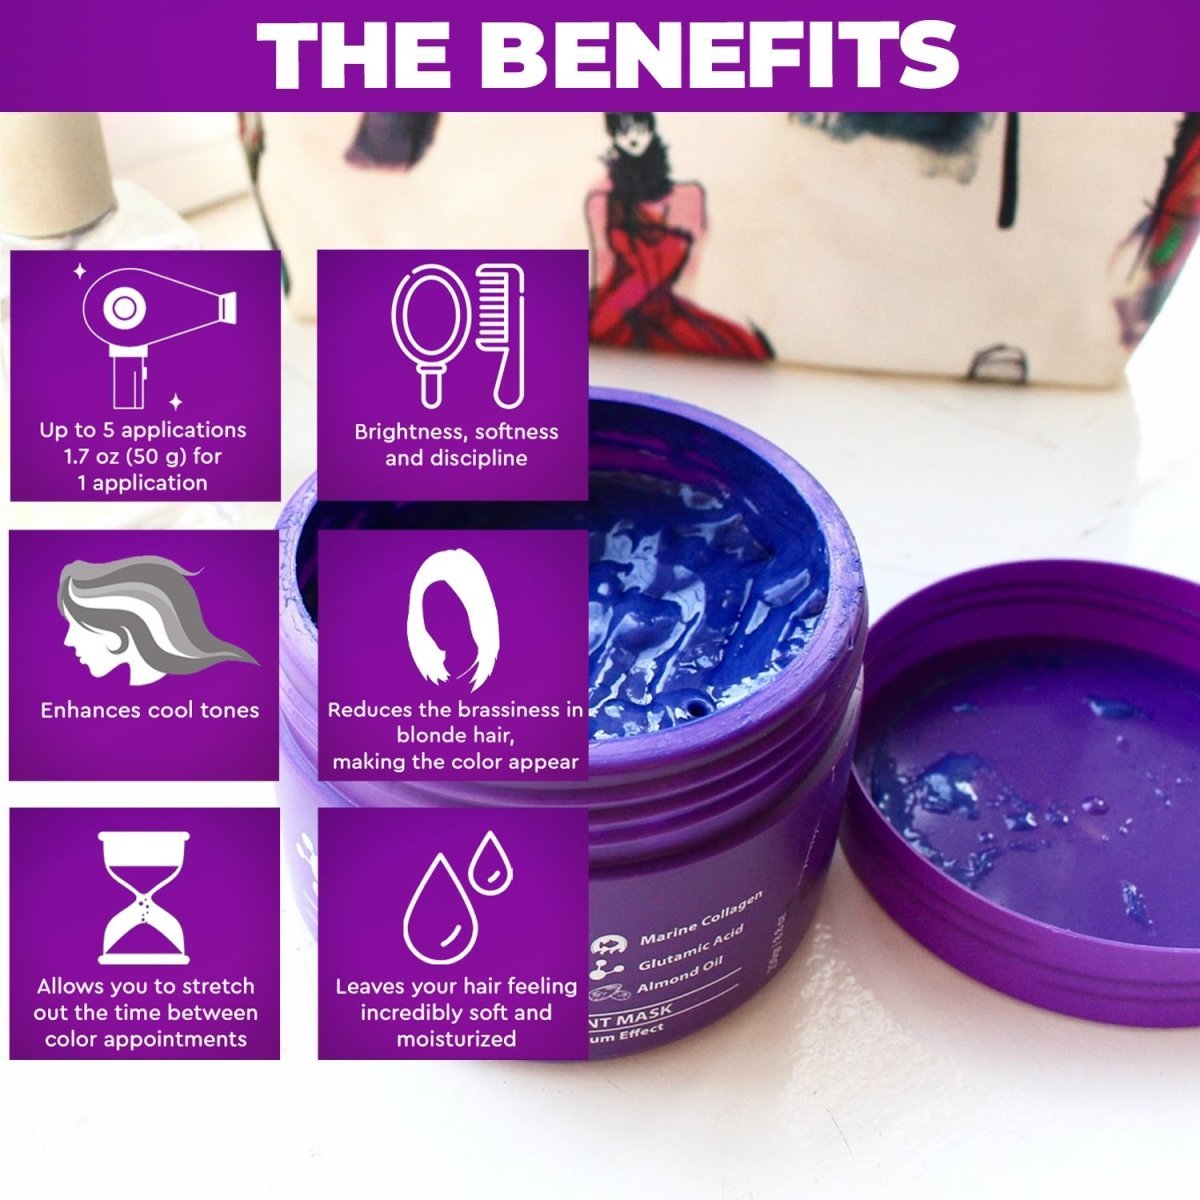 Blonde Bottox Hair Expert Purple Toning Mask 8.8 oz / 250 grams - HAB 